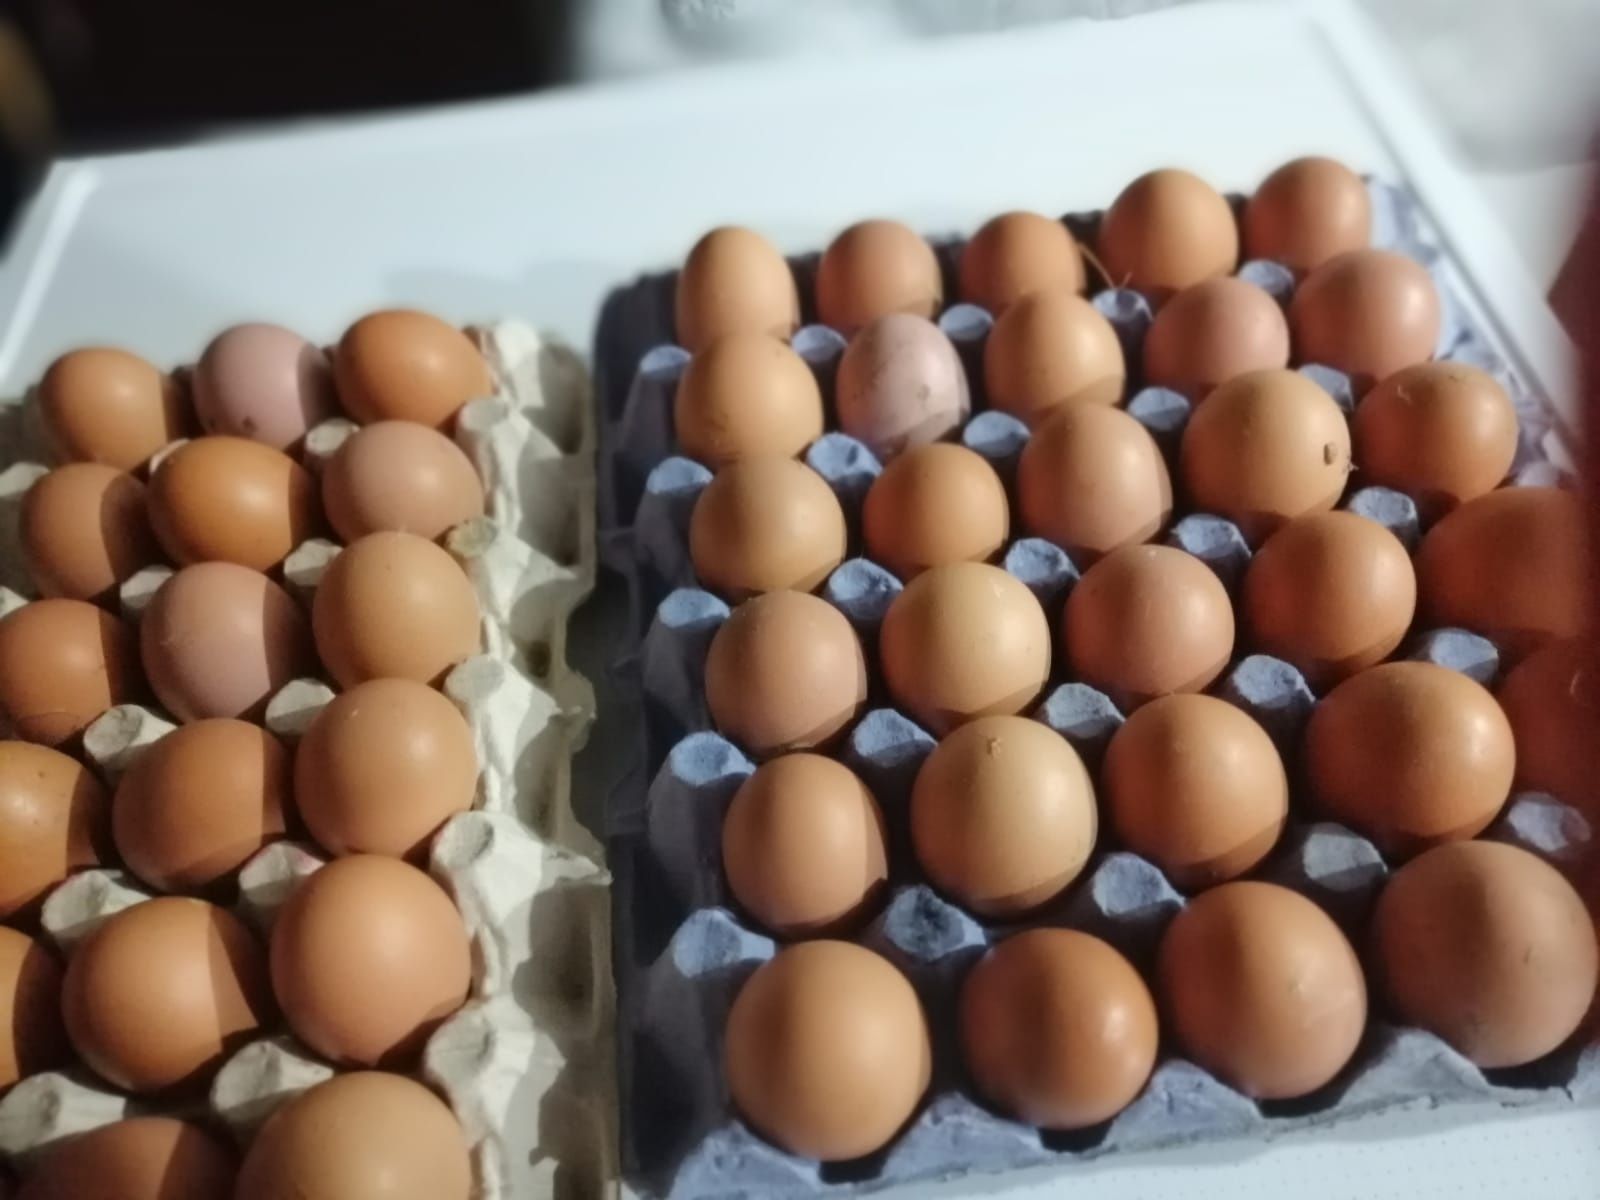 Ouă de la găini hrănite cu cereale